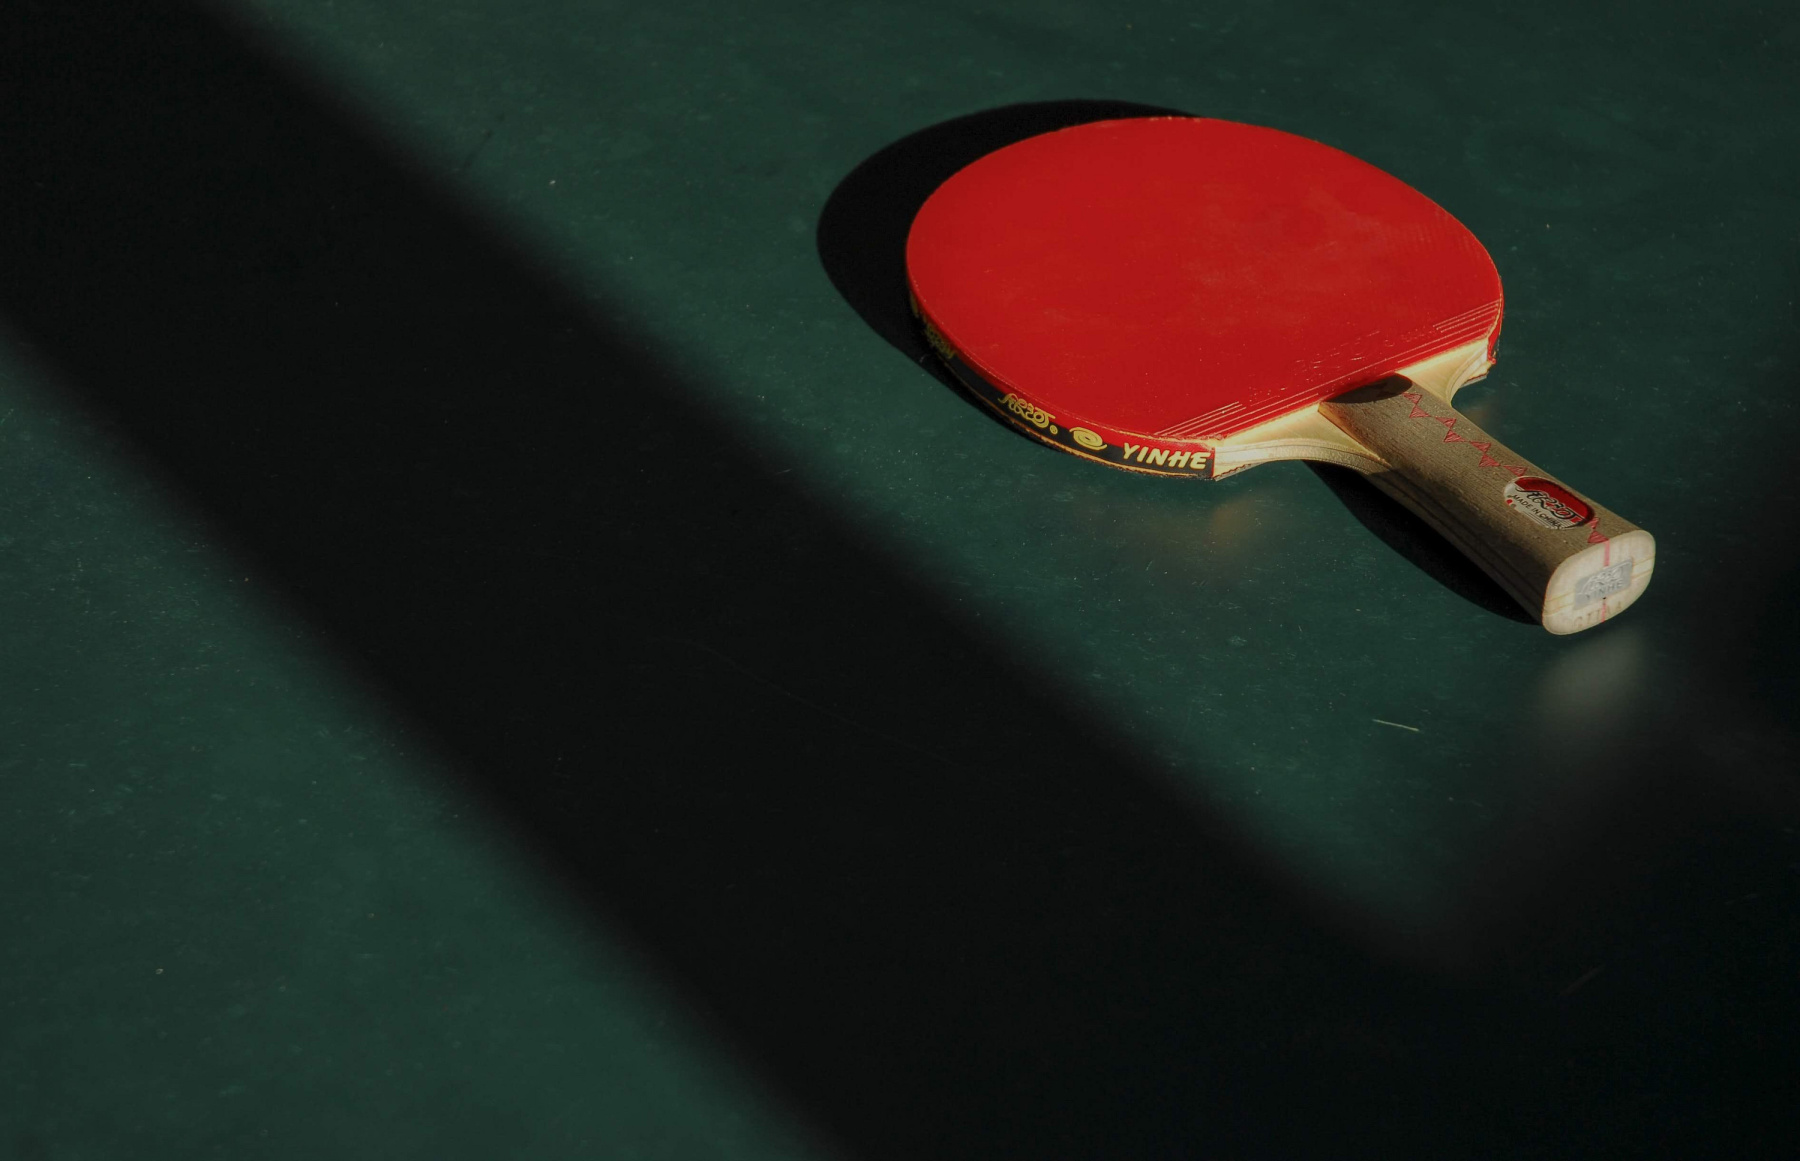 Les 8 Meilleures Tables de Ping-pong Extérieur : Notre Comparatif